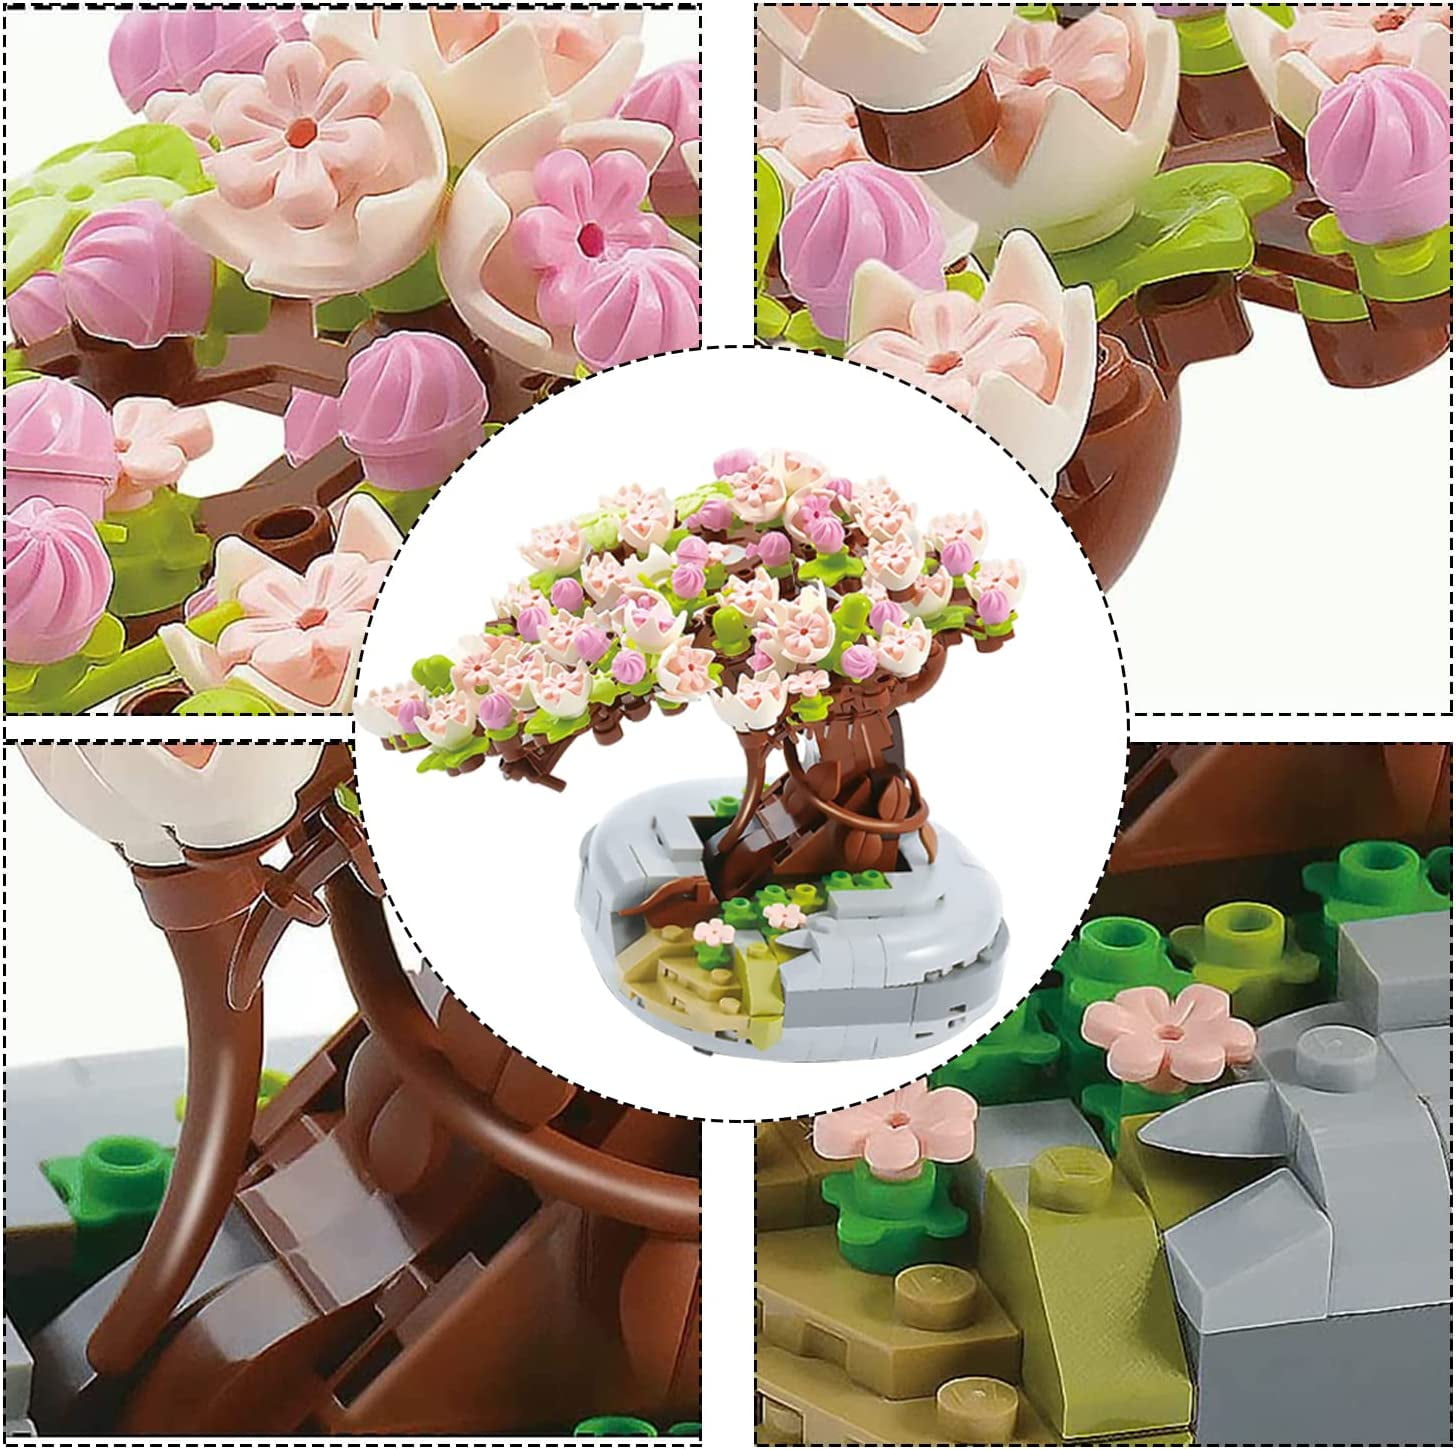 MEIEST Mini Building Blocks Flower Bouquet Plant Model Set,Creative  Artificial Flowers Botanical Collection Construction Building Bricks Toy  for